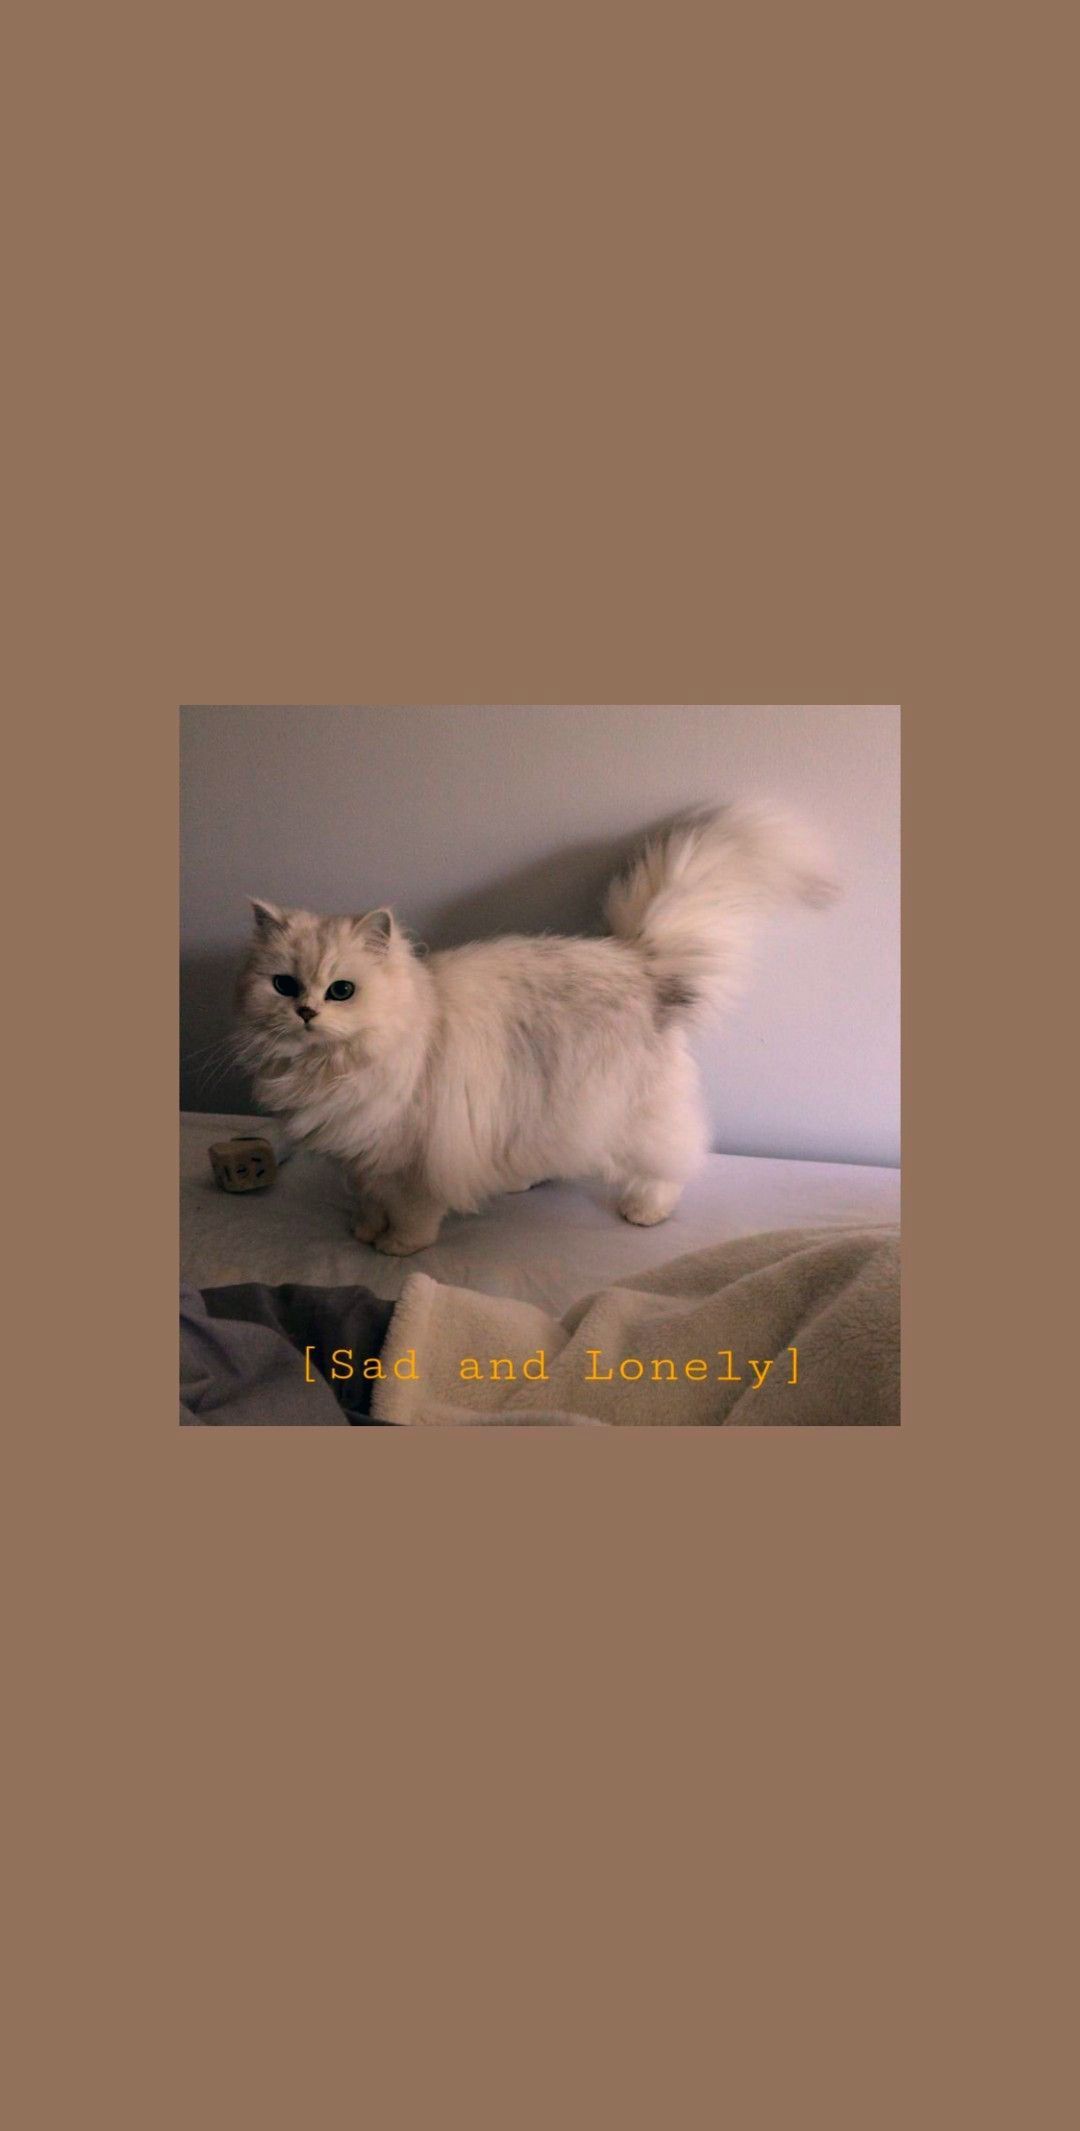 870 Aesthetic Cat Wallpaper Free Download 4kpng